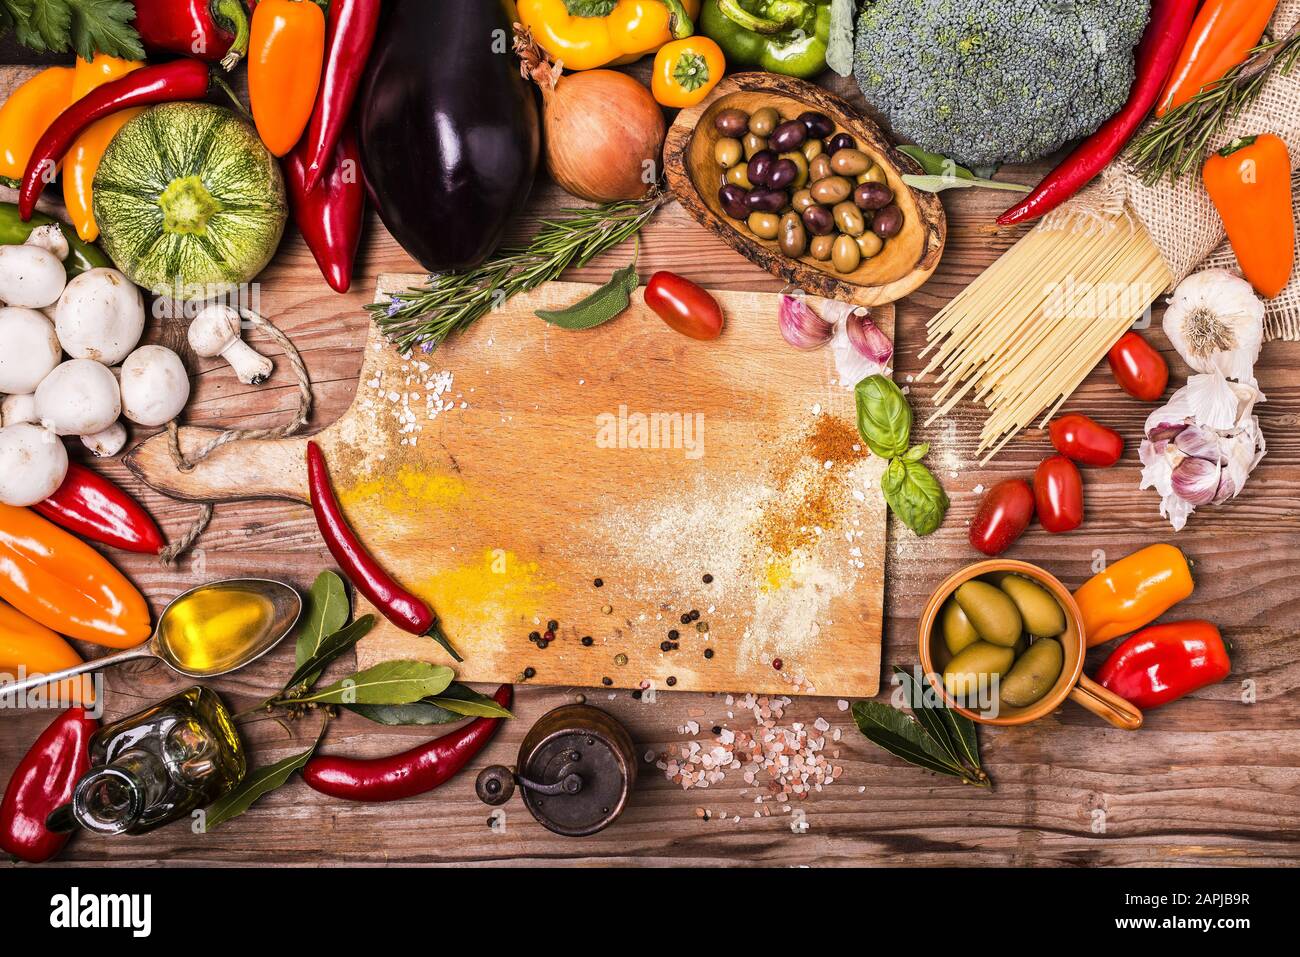 couleurs et saveurs de différents types de légumes, pâtes et ingrédients sur la table en bois brut Banque D'Images